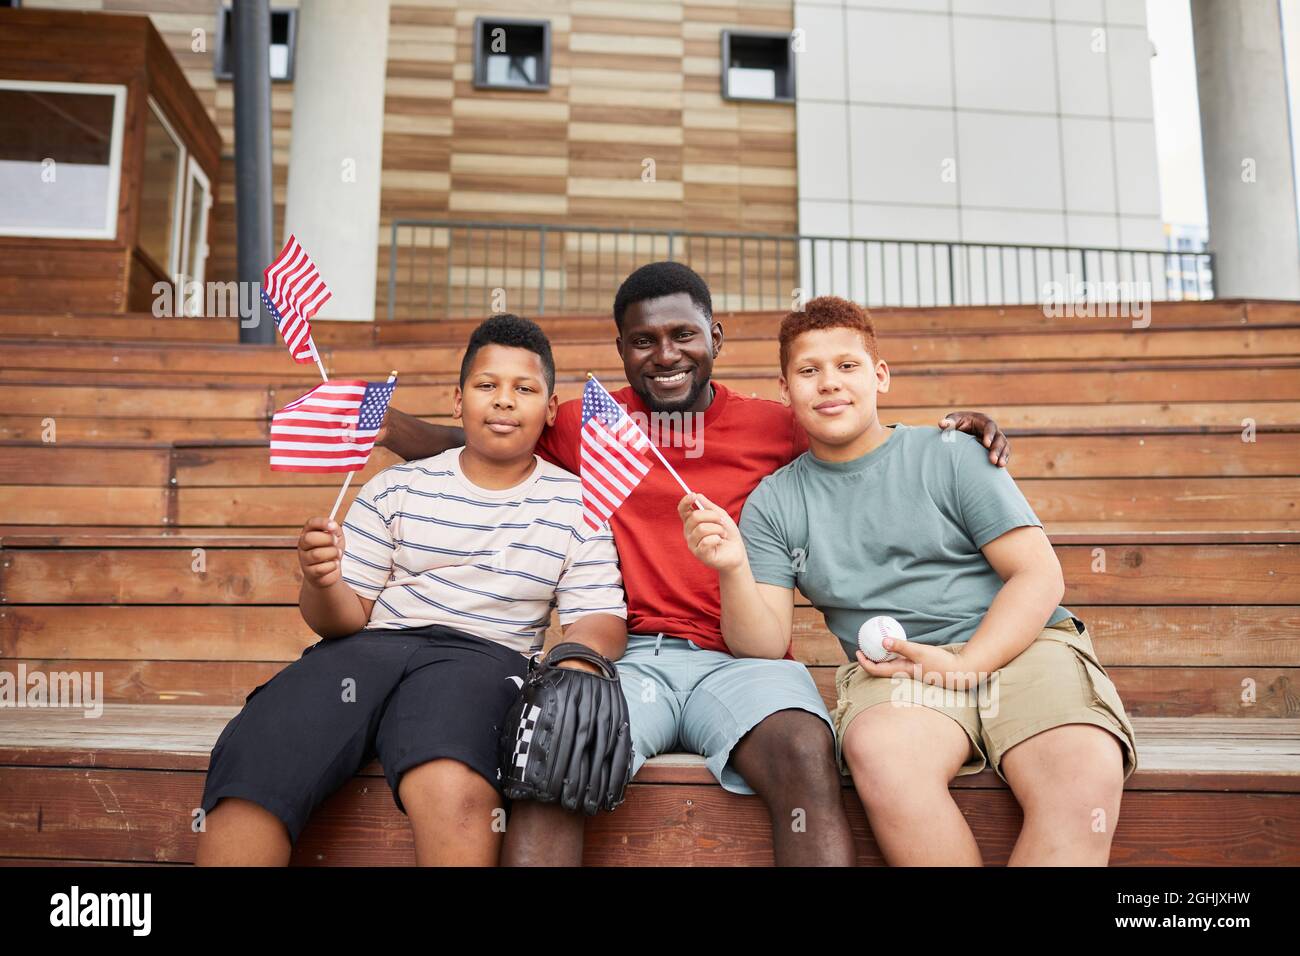 Porträt eines glücklichen schwarzen Vaters, der Söhne im Teenageralter mit amerikanischen Flaggen umarmt, während sie gemeinsam das Baseballspiel besuchen Stockfoto